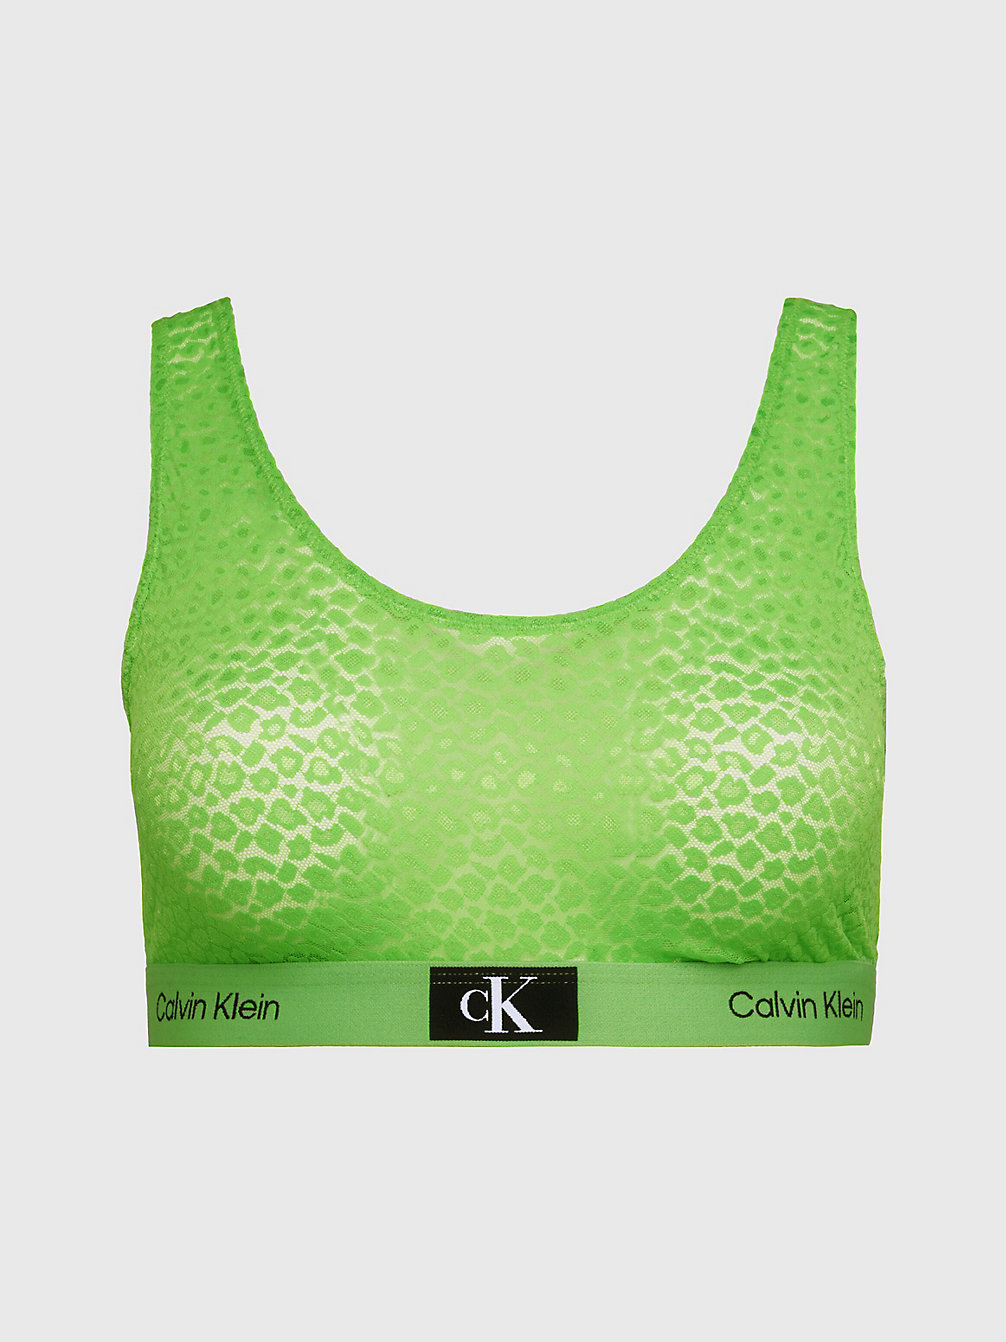 FABULOUS GREEN Plus Size Bralette - Ck96 undefined women Calvin Klein